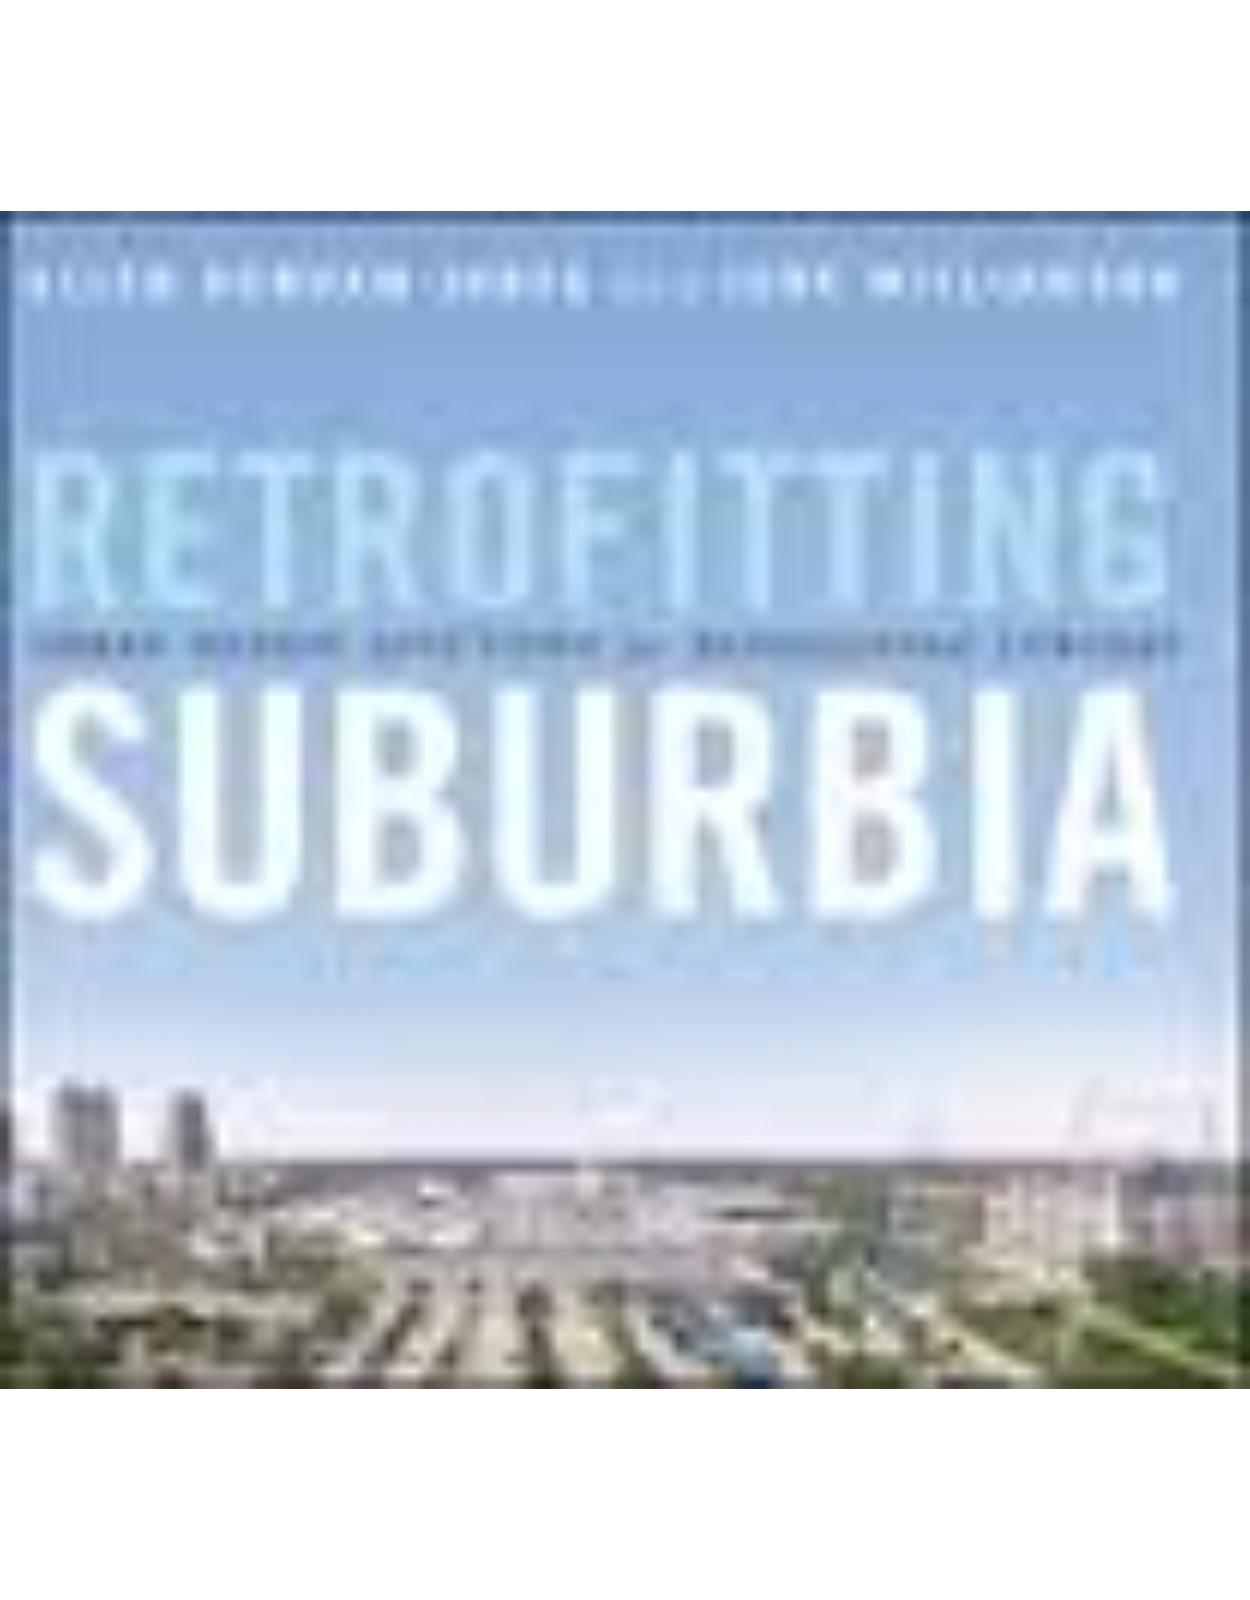 Retrofitting Suburbia: Urban Design Solutions for Redesigning Suburbs